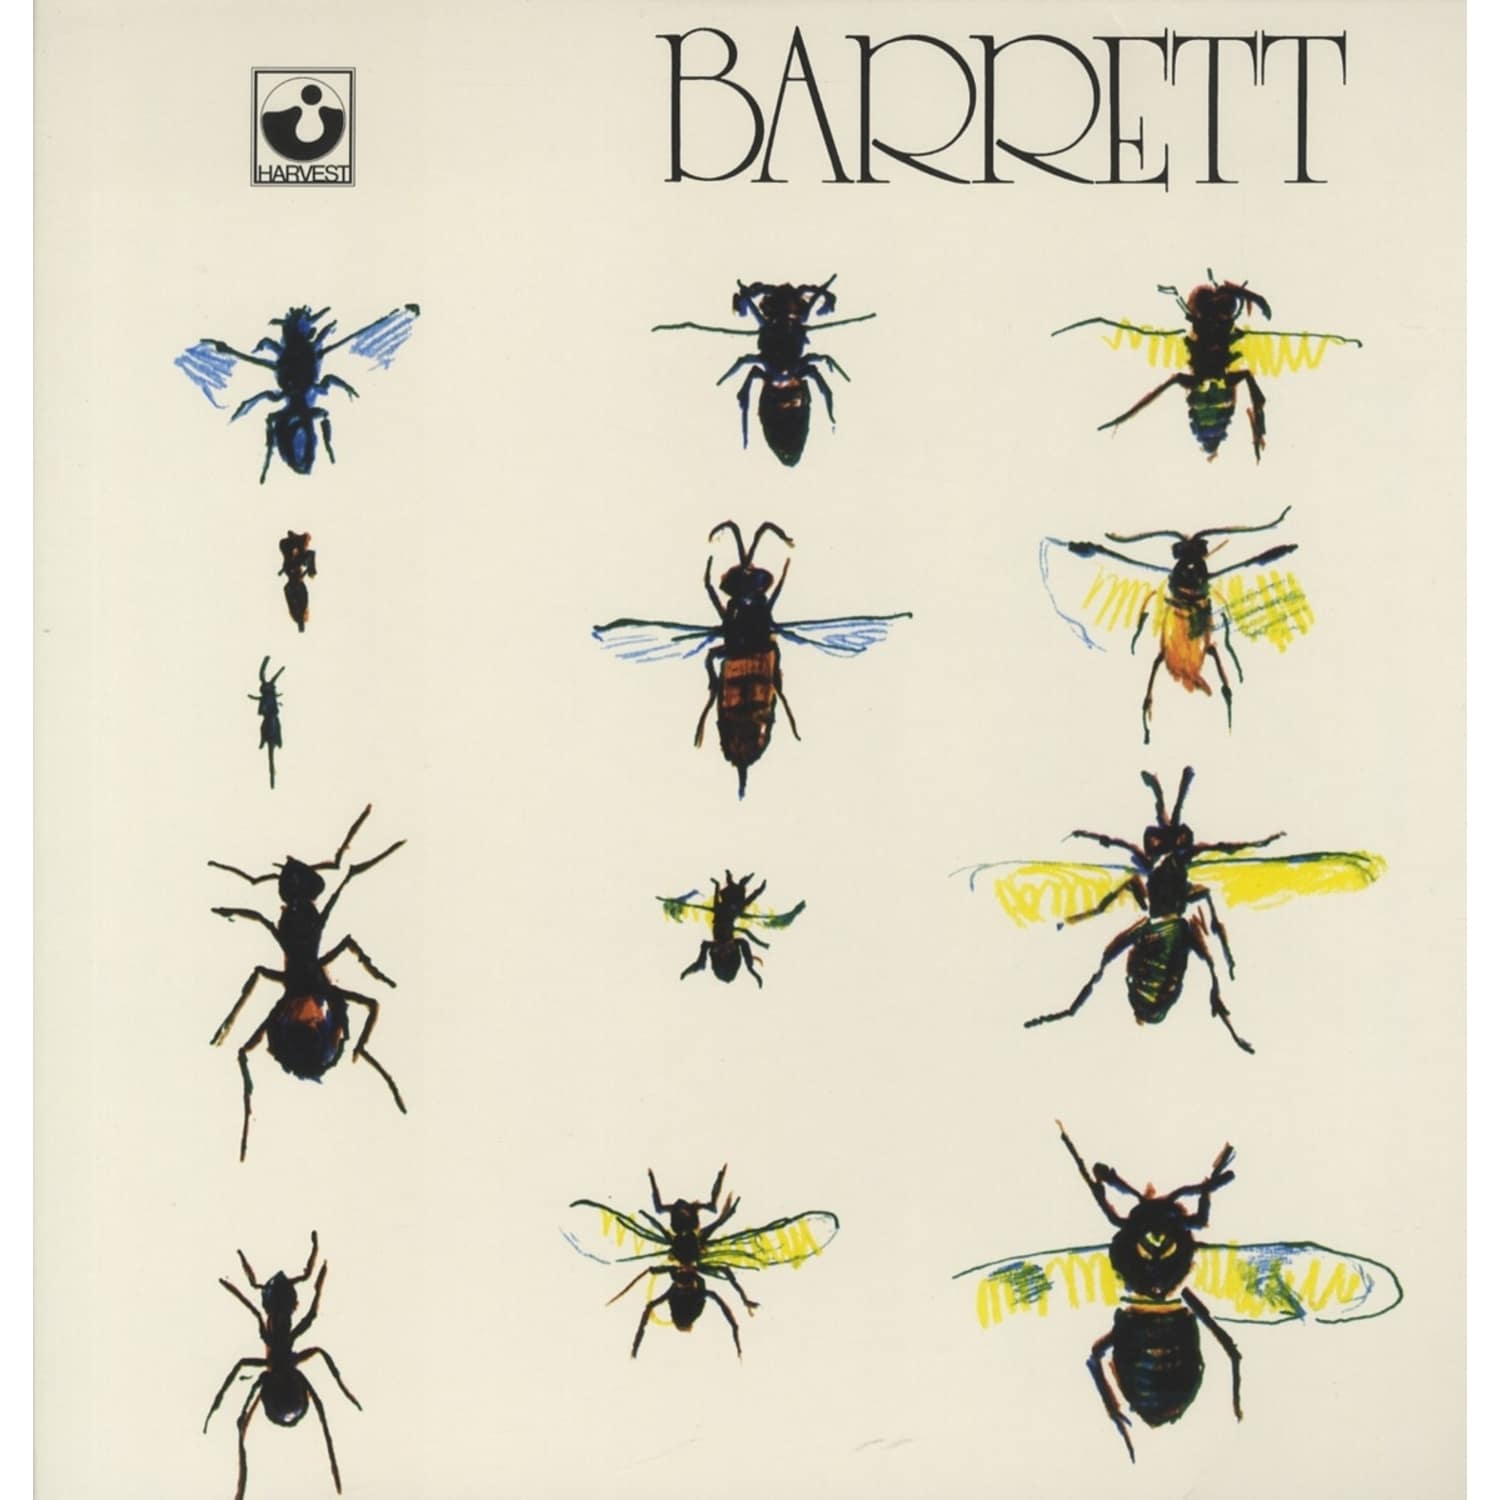 Syd Barrett - BARRETT 